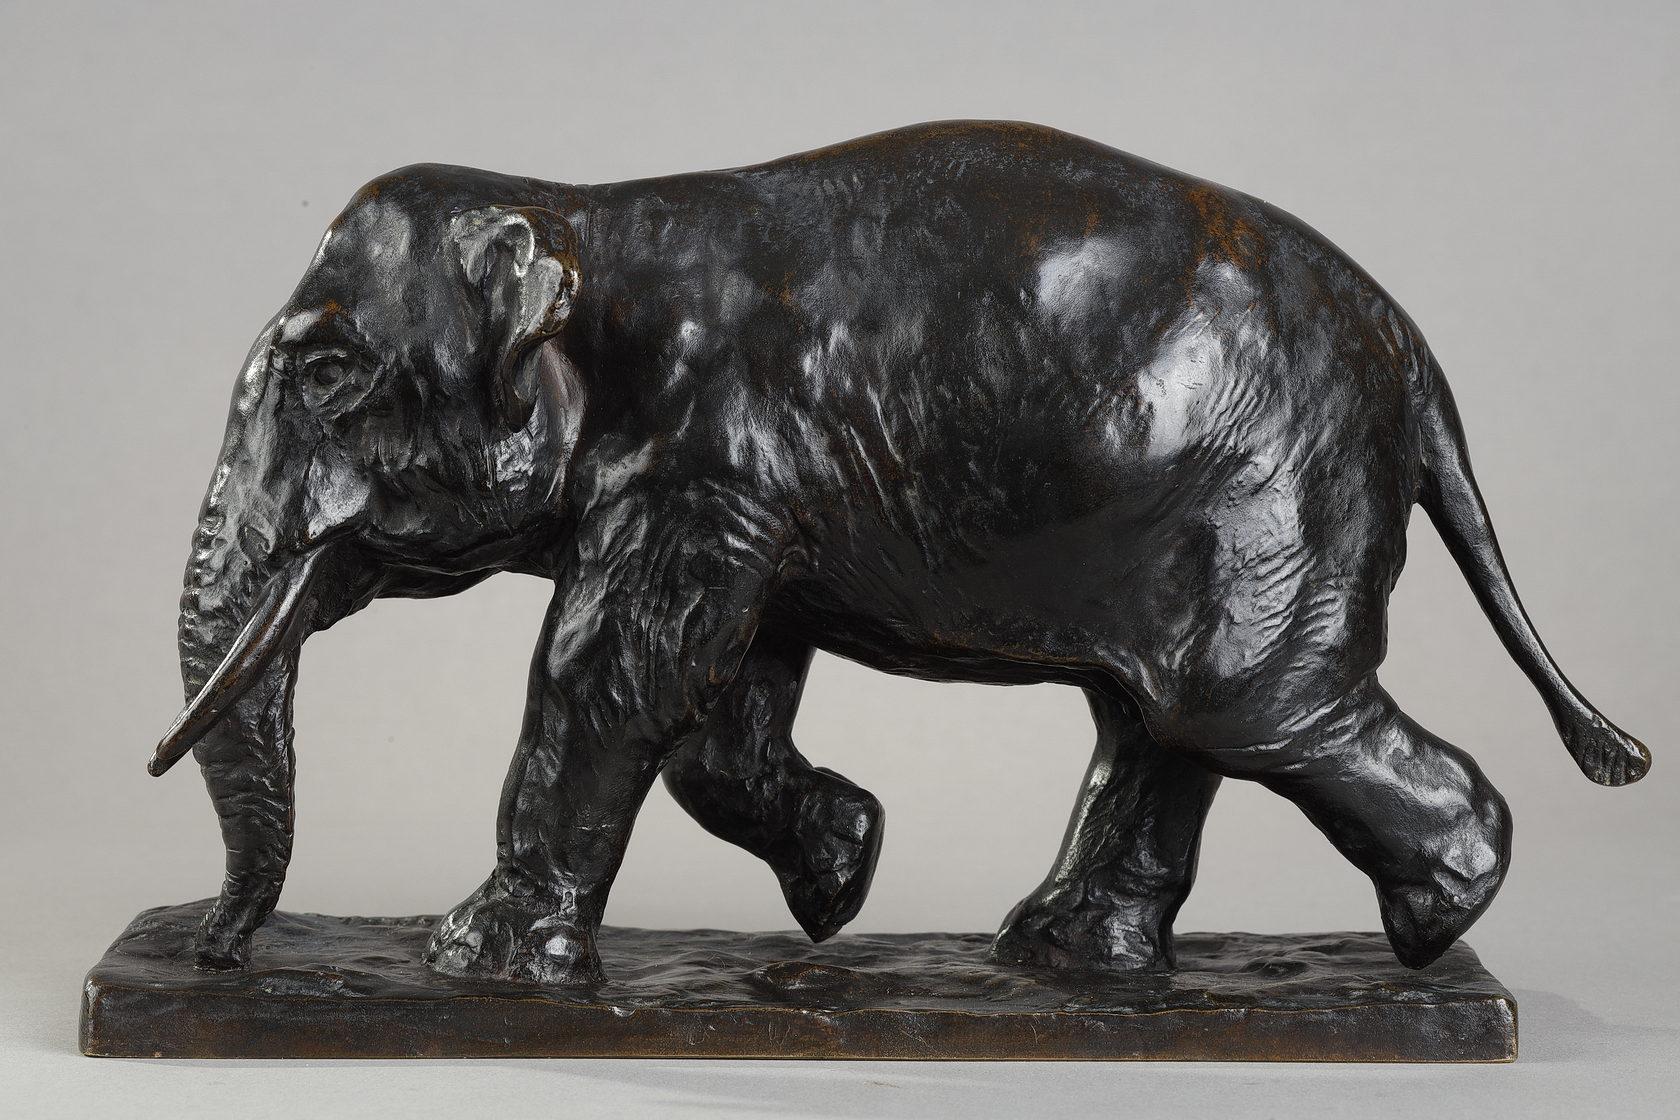 Le trot de l'éléphant
par Roger GODCHAUX (1878-1958)

Rare sculpture en bronze à la patine brun foncé nuancée
Signé 